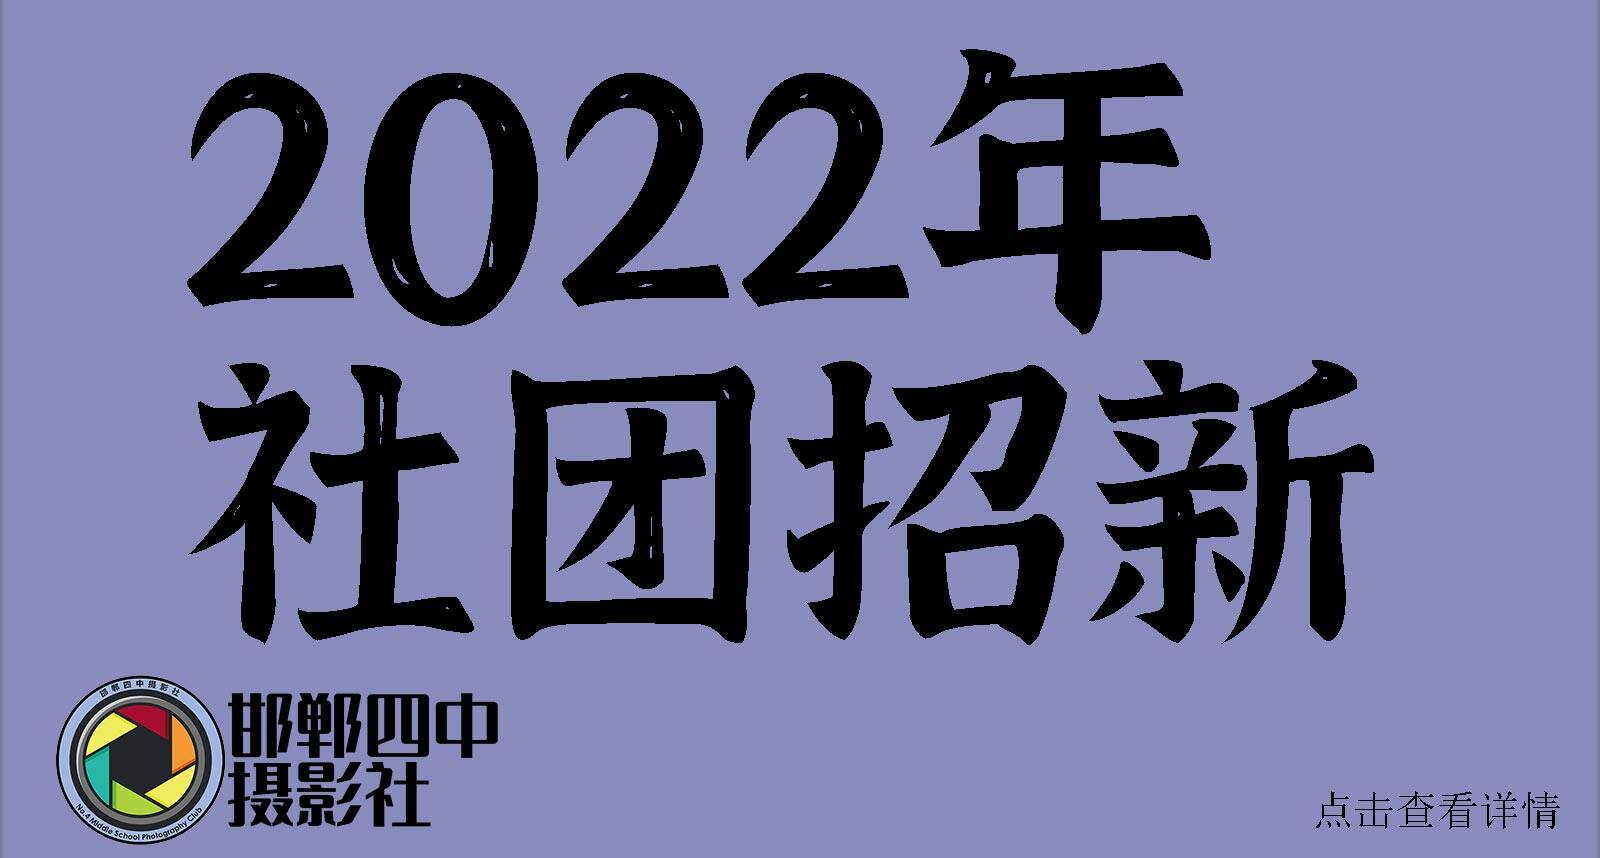 2022社团招新.jpg